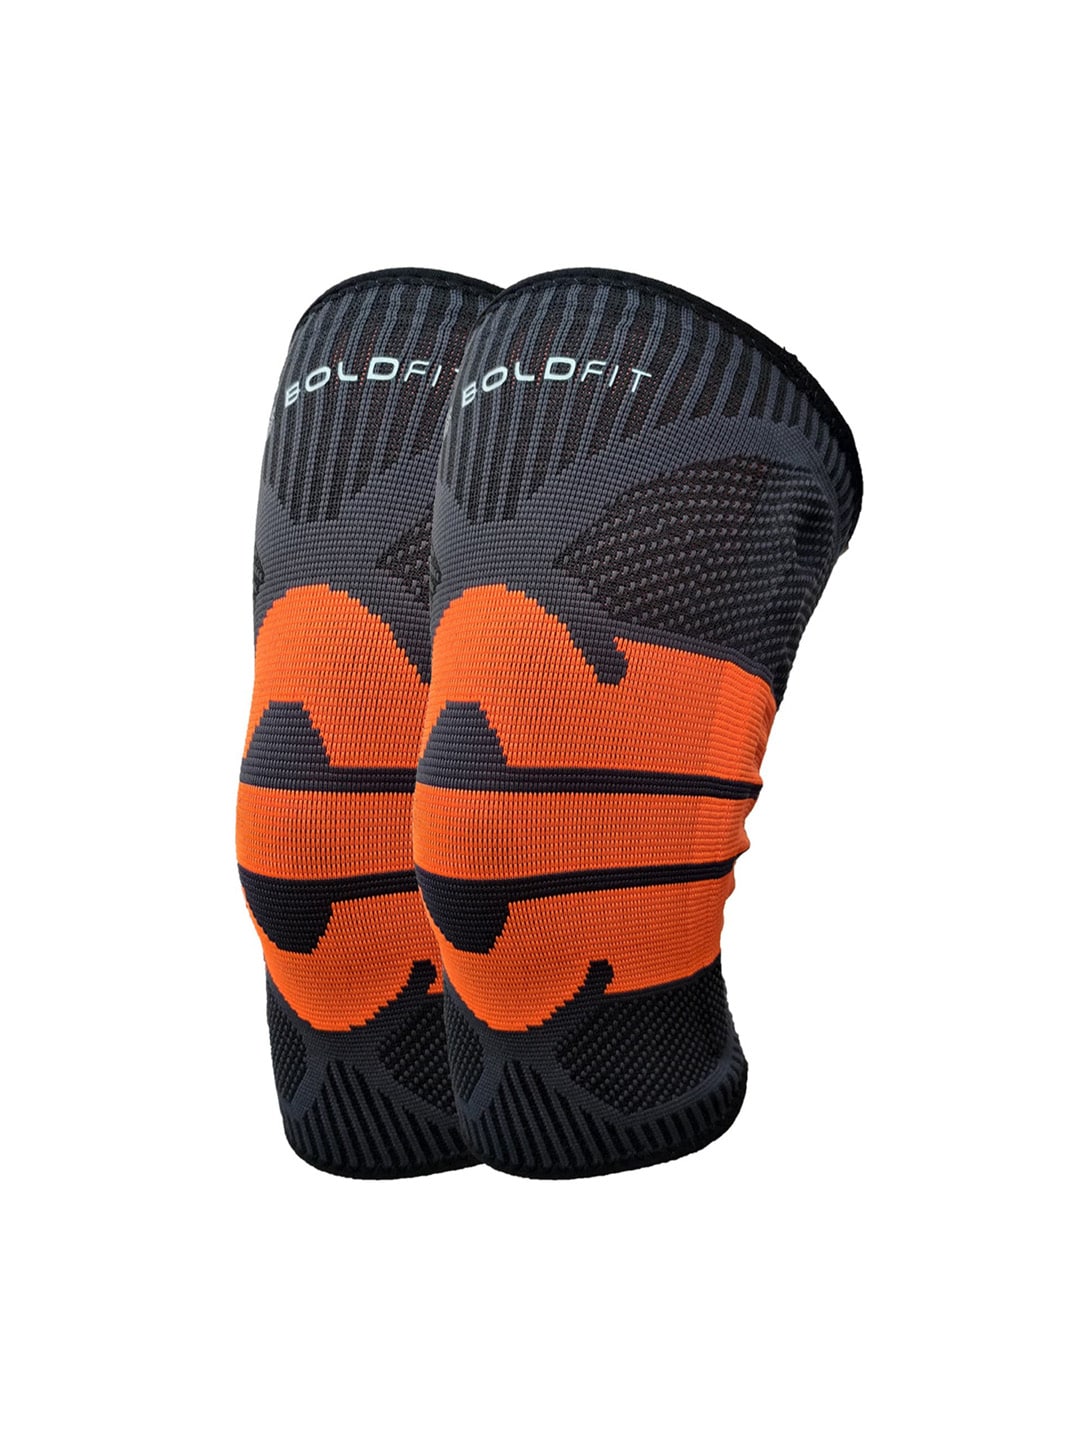 BOLDFIT Orange & Black Printed Knee Support Cap Price in India